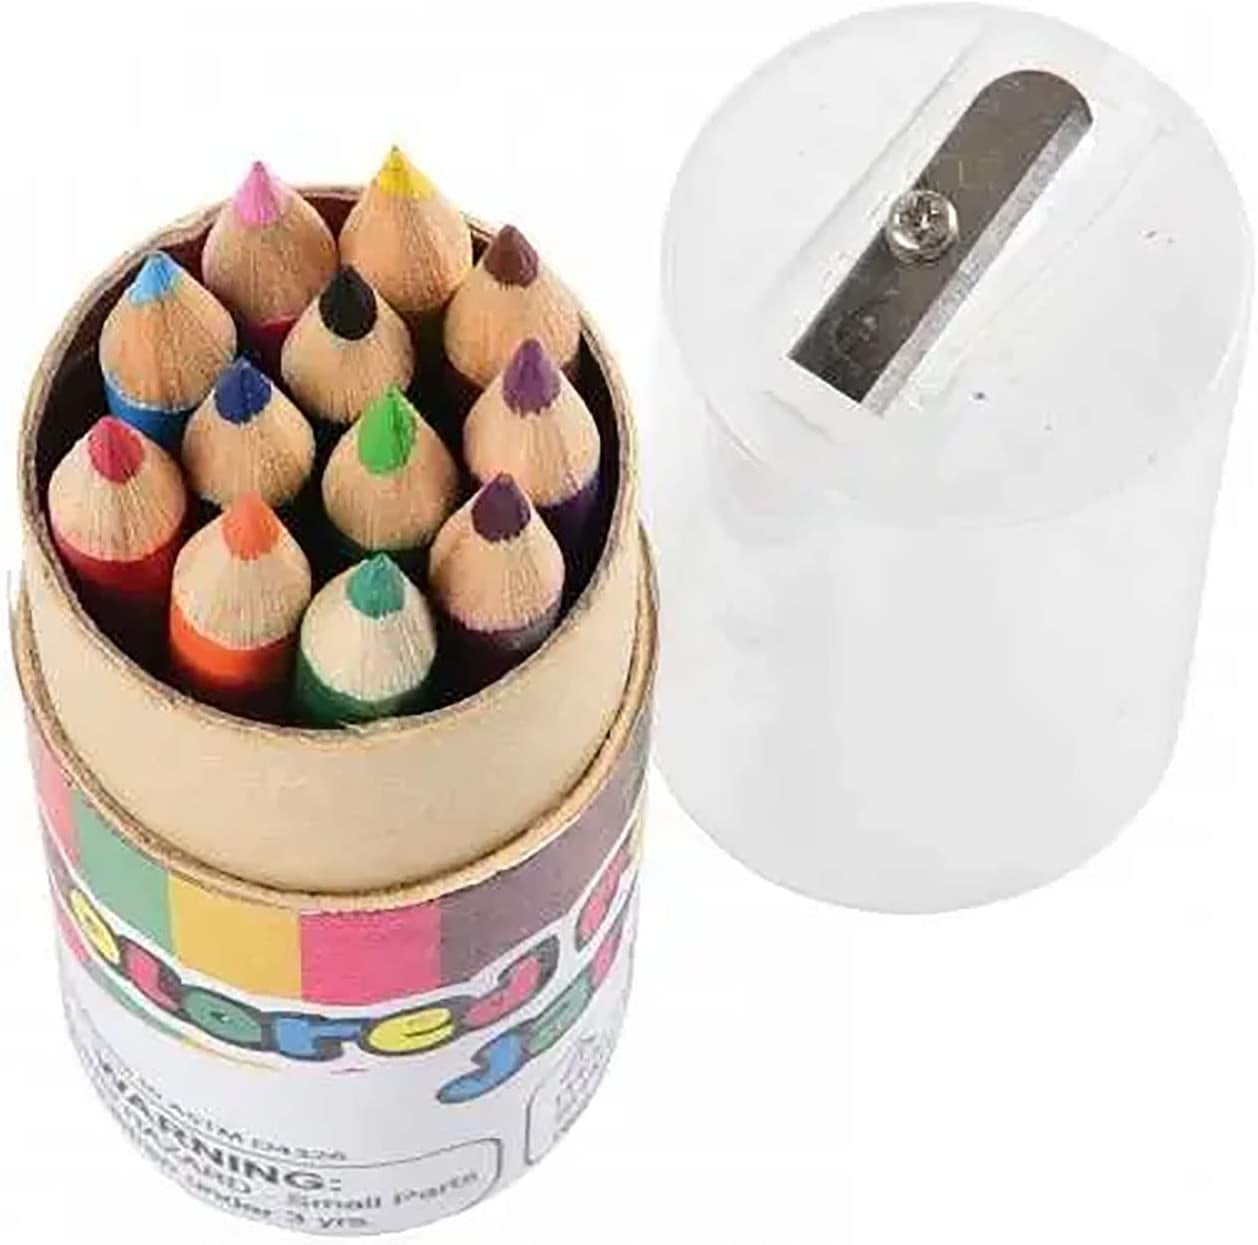 SDJMa Small Glitter Pencil Pouch, Small Pen Pencil Stationery Pouch Bag  Slim Design Zipper Pencil Pouch for Pens, Pencils, Marker, Pencil Pouch